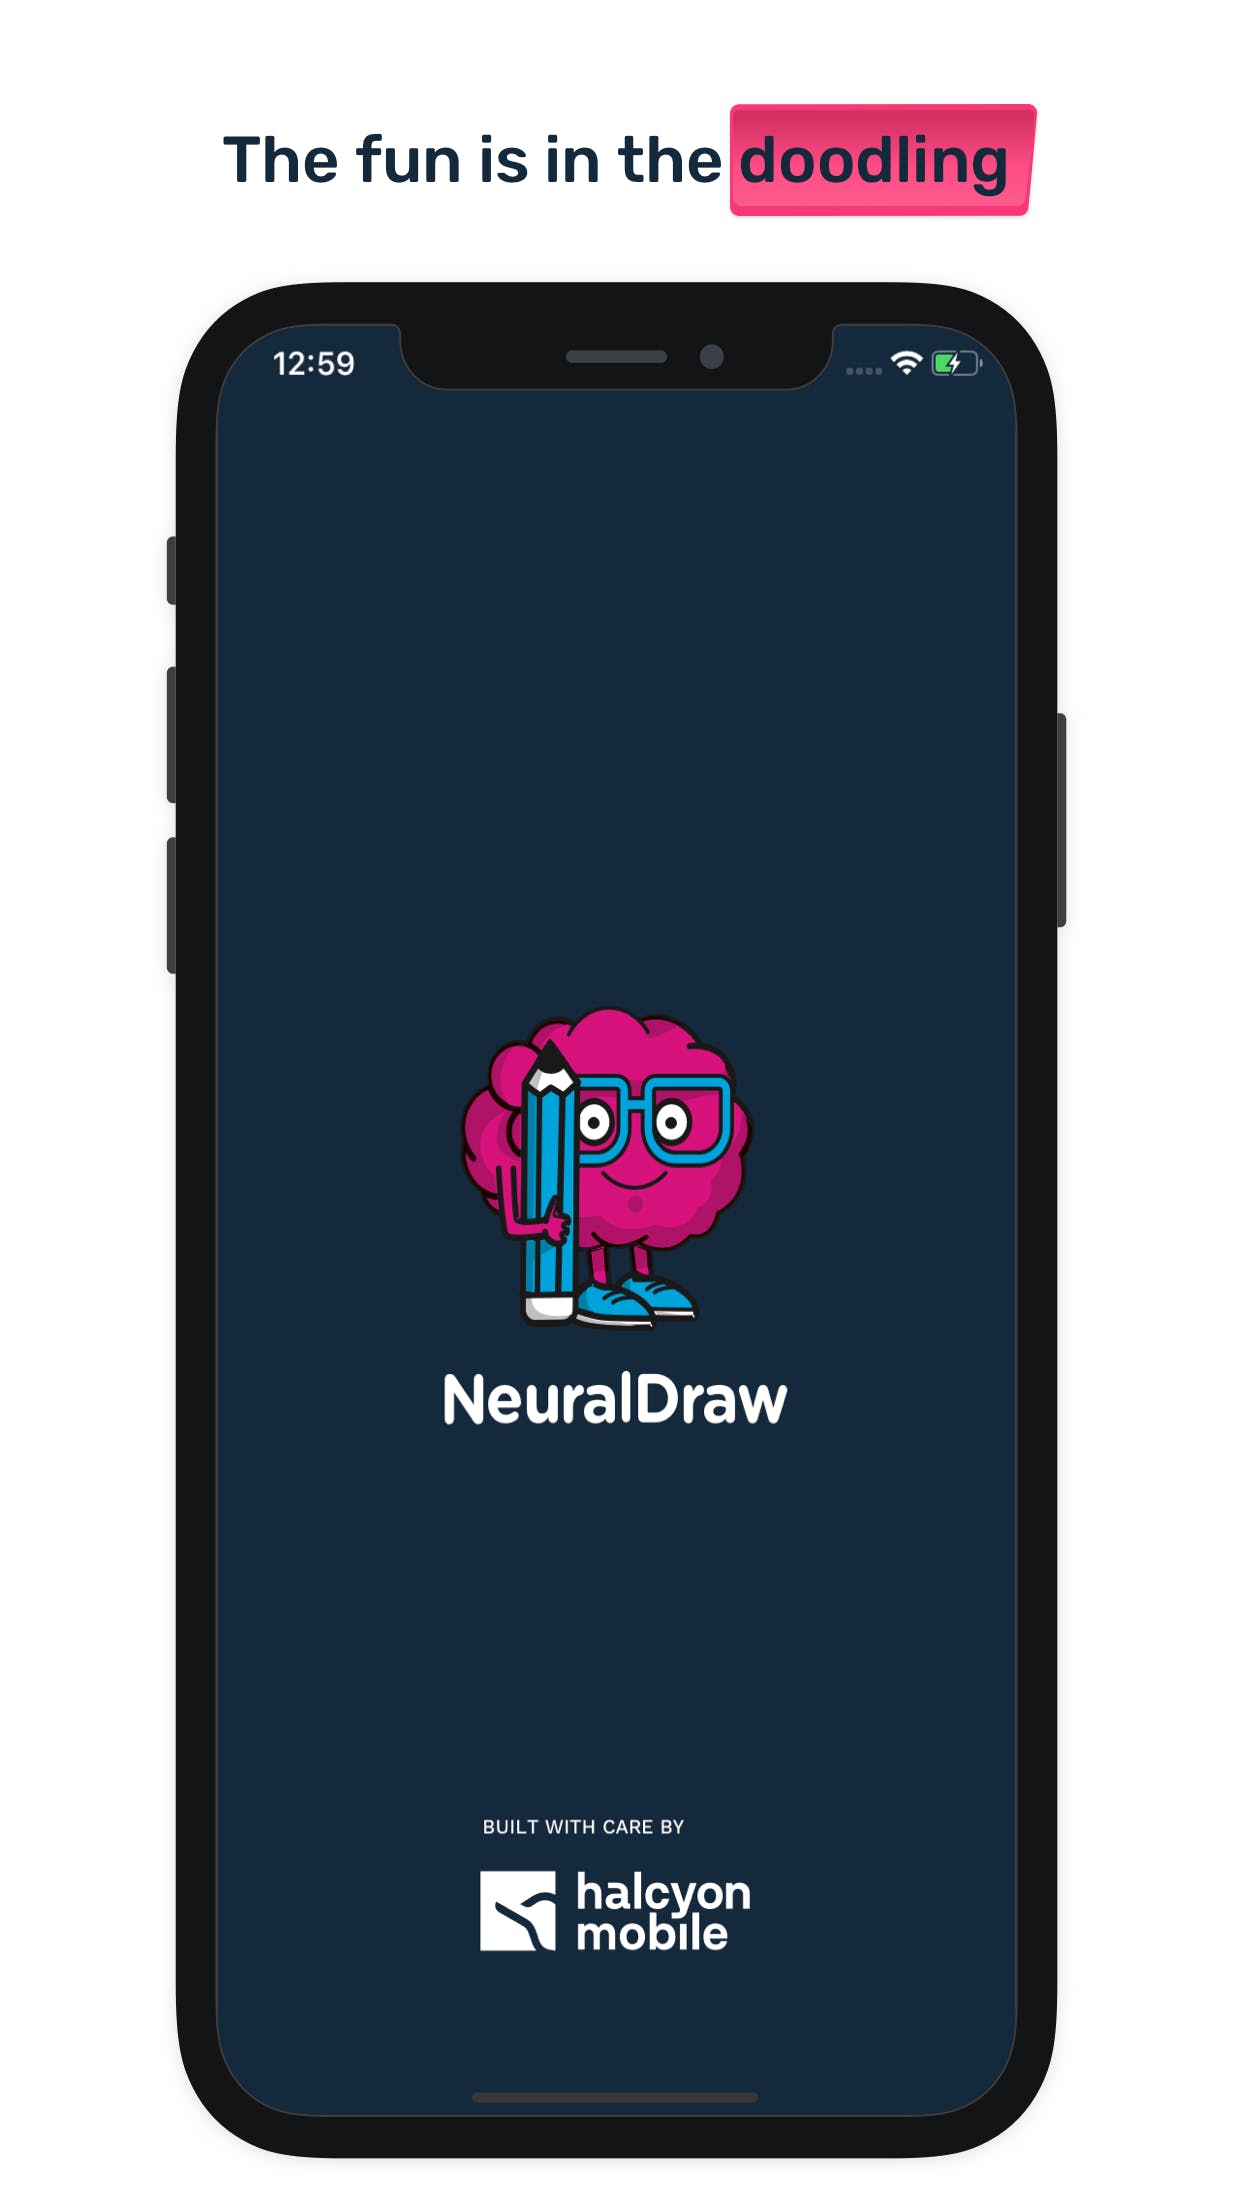 NeuralDraw media 2